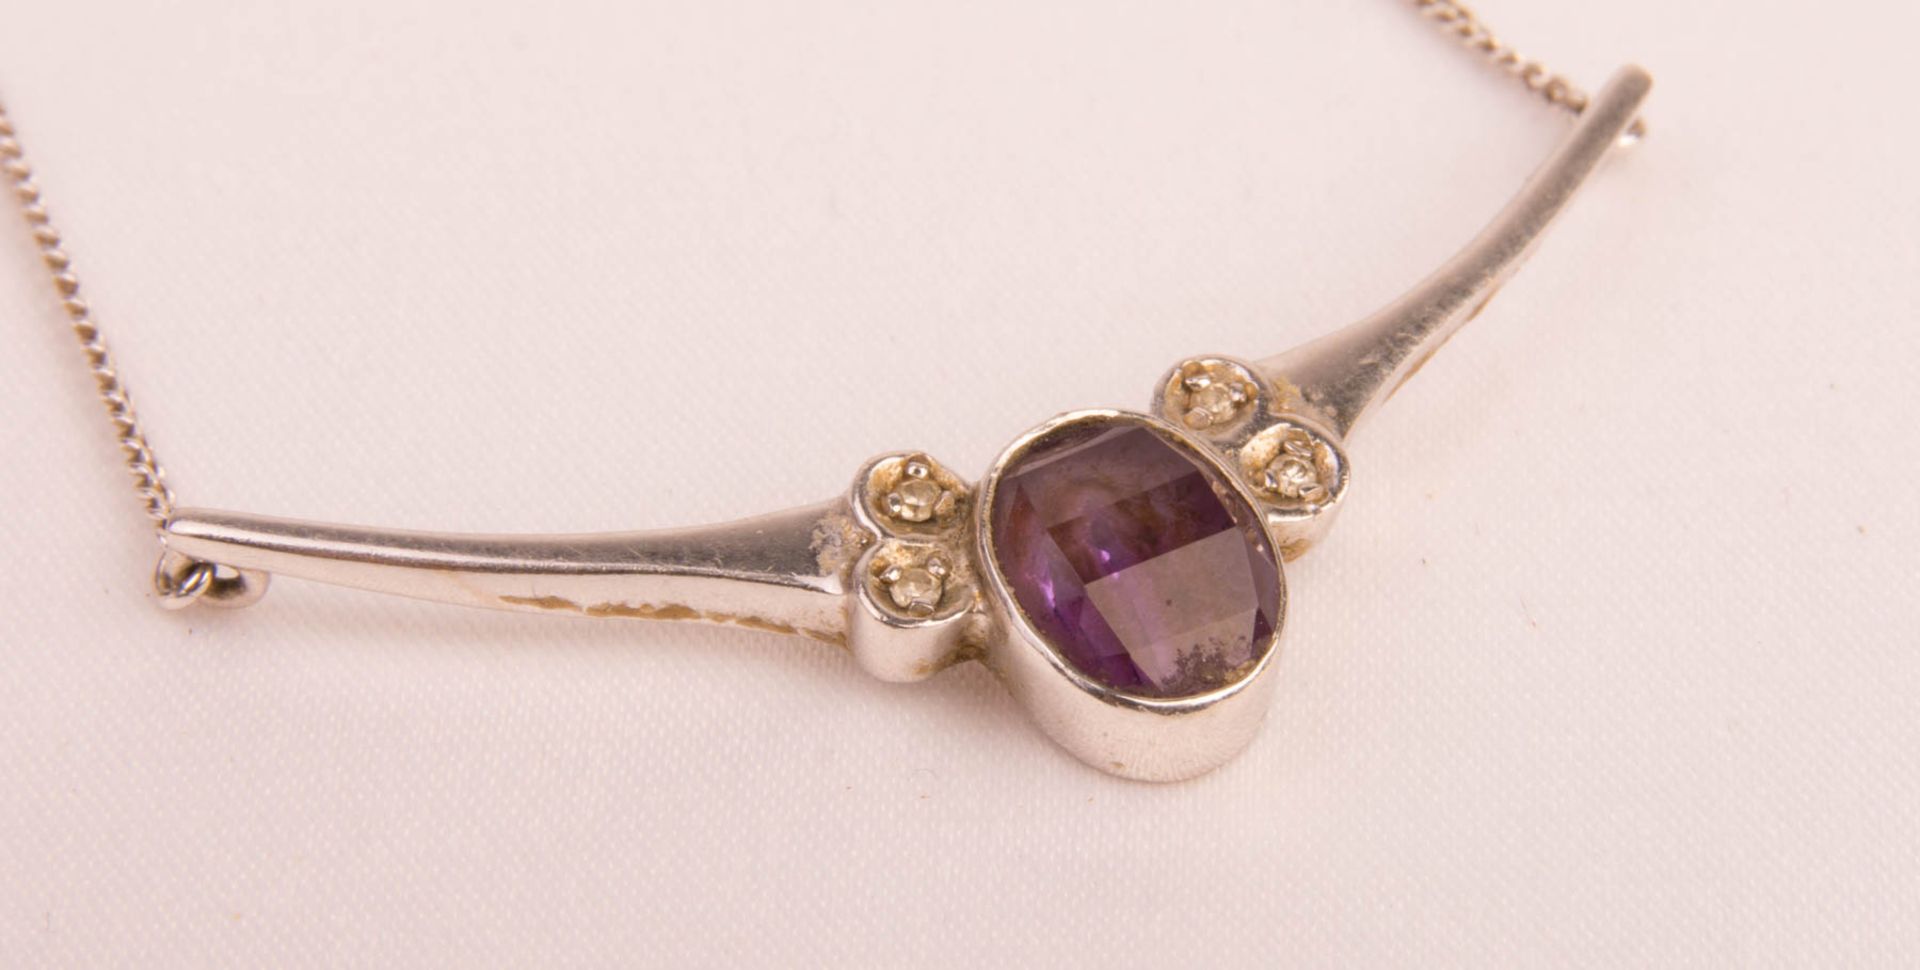 Halskette mit violettem Edelstein, Friedrich Binder, 585er Weißgold. - Bild 2 aus 4